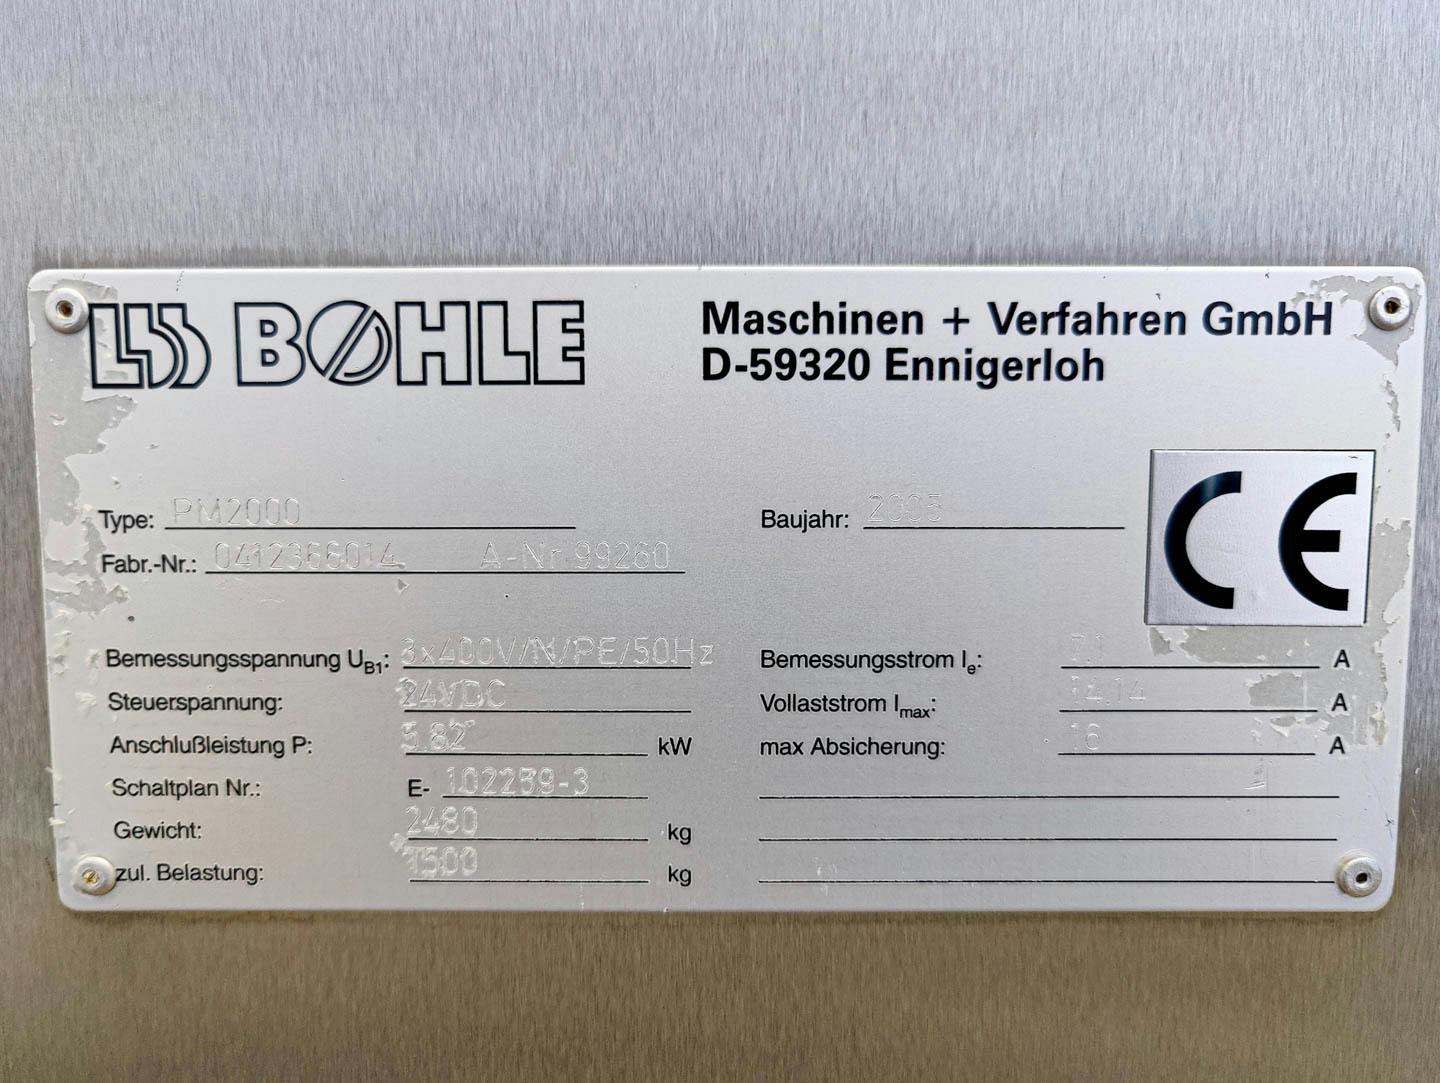 LB Bohle PM-2000 - Taumelmischer - image 5